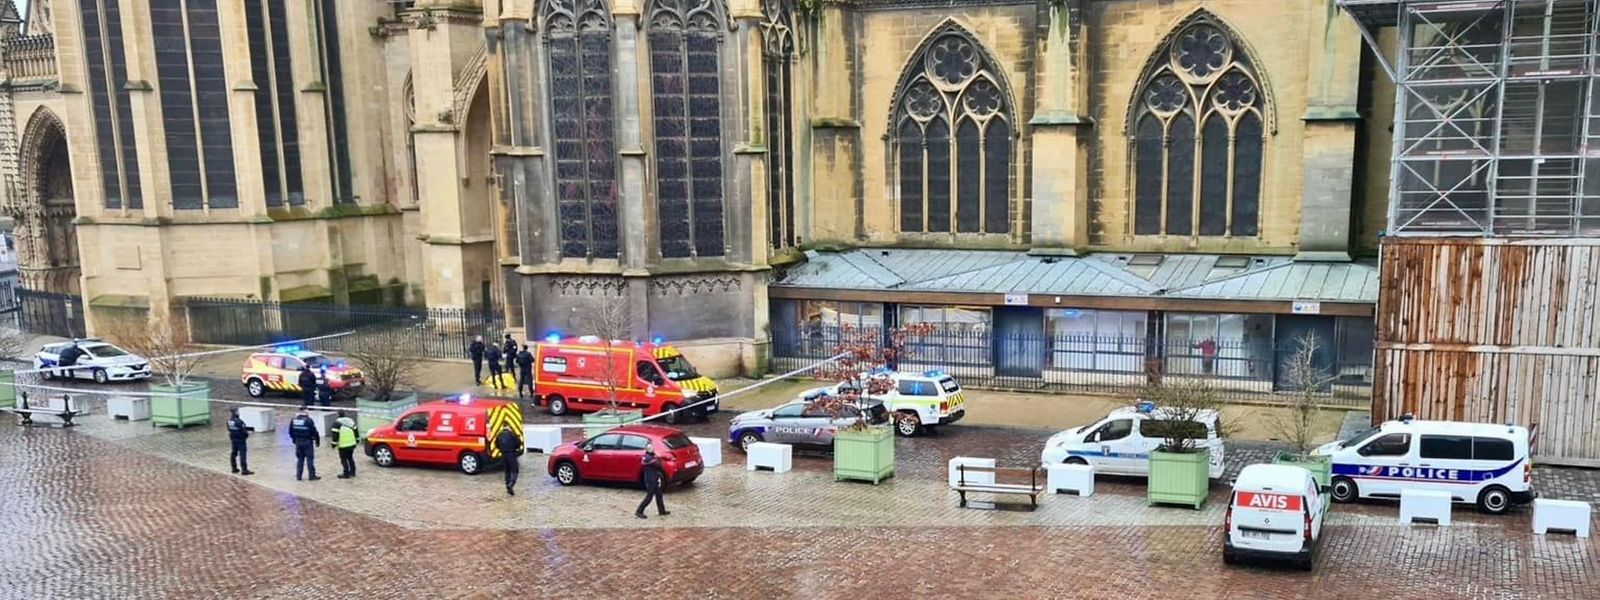 Le maire de Metz François Grosdidier a publié cette photo sur les réseaux sociaux montrant l'intervention des secours .